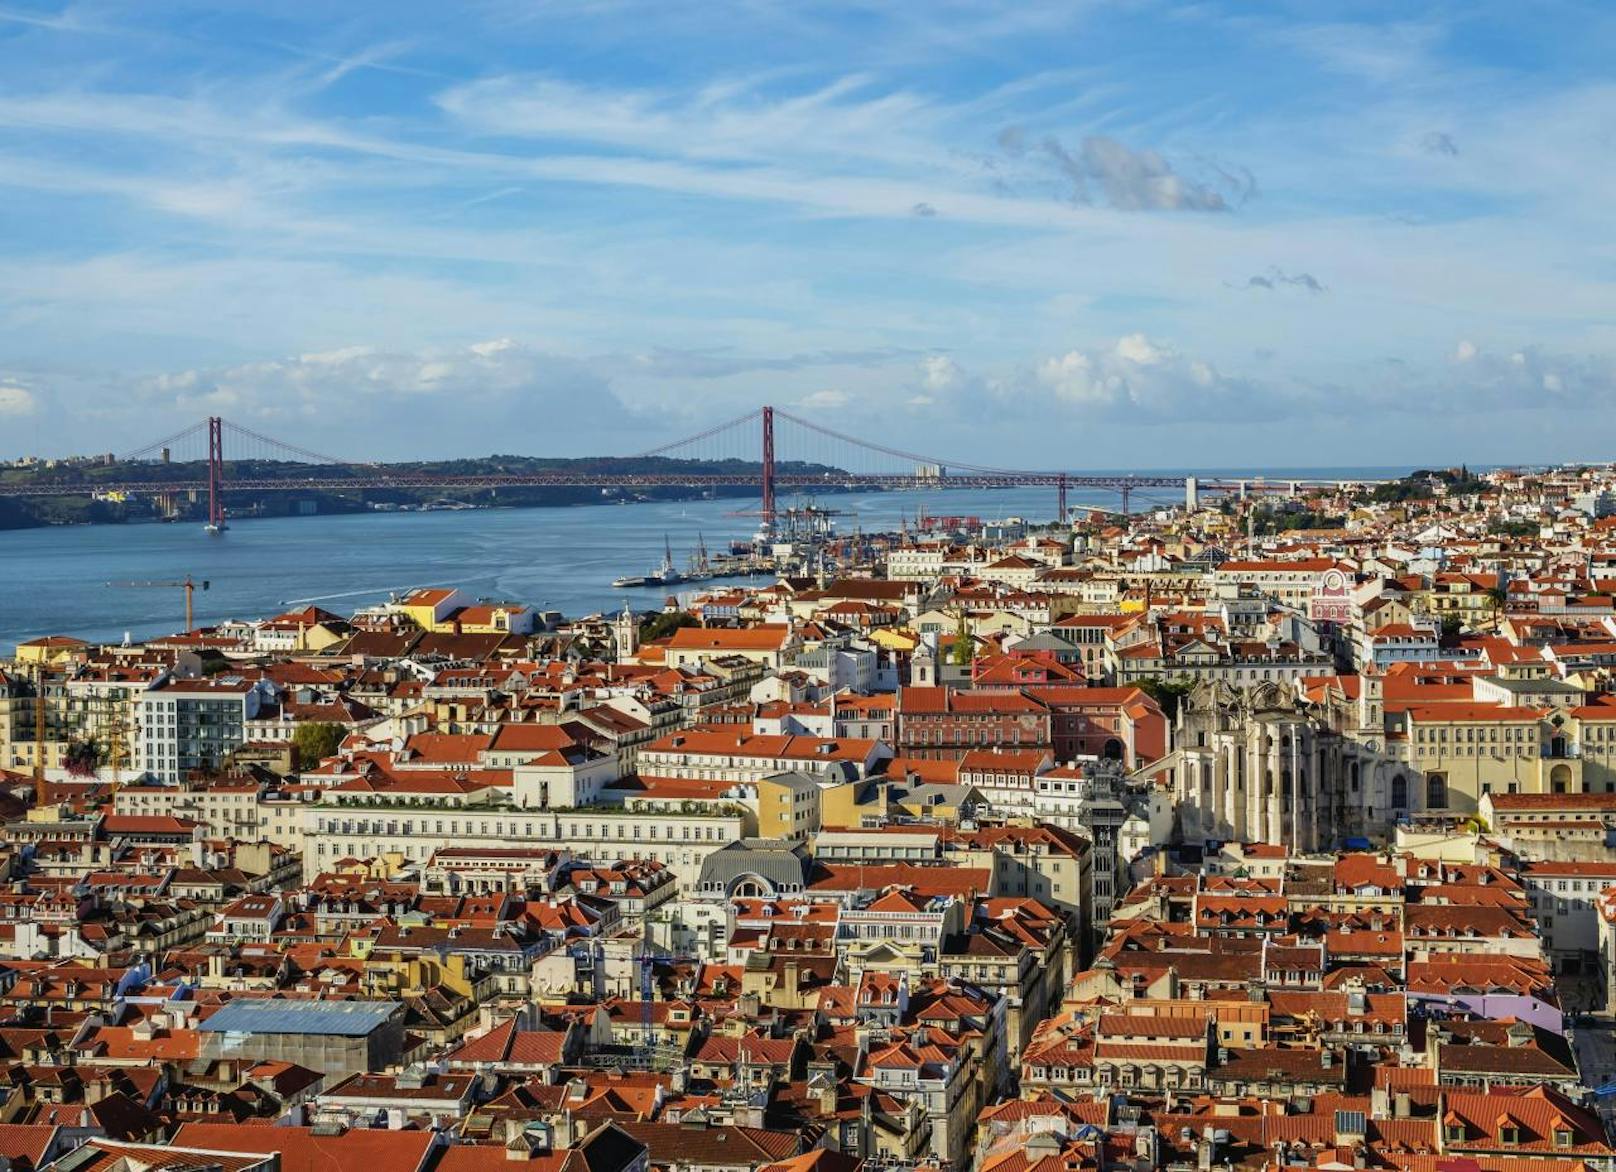 <b>Lissabon</b> ist eine der charismatischten Metropolen Westeuropas. Das ganze Jahr über hat es angenehme Temperaturen und in der portugiesischen Hauptstadt gibt es allerhand zu sehen. Wer auf moderne Kultur gepaart mit Tradition steht, liegt mit einem Trip in die atemberaubende portugiesische Stadt garantiert richtig.